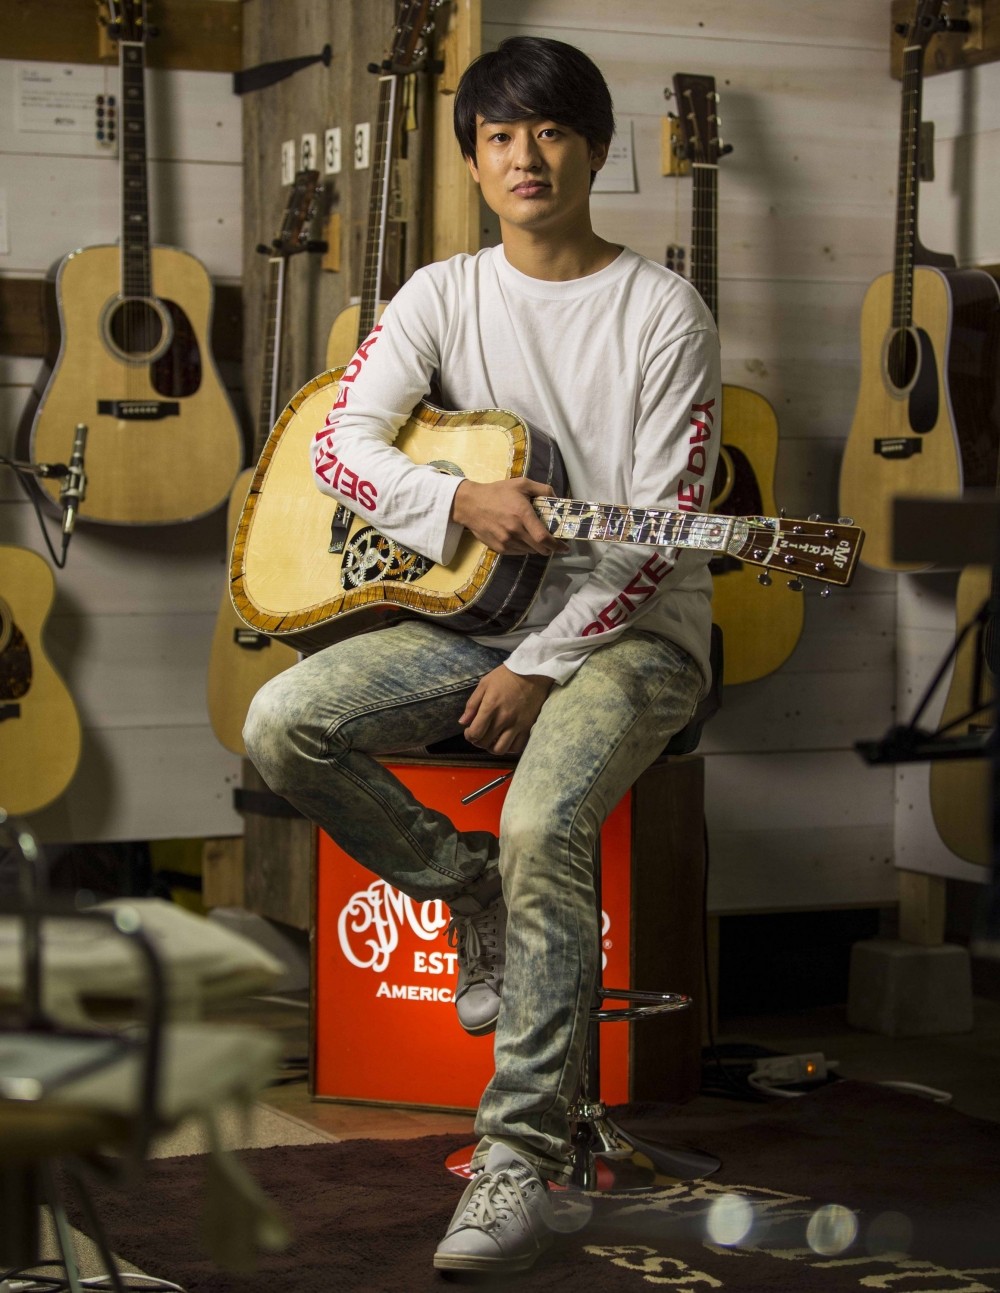 【インタビュー】マーティンのギターのそばにはいつも、音楽と笑顔がある──尾崎裕哉